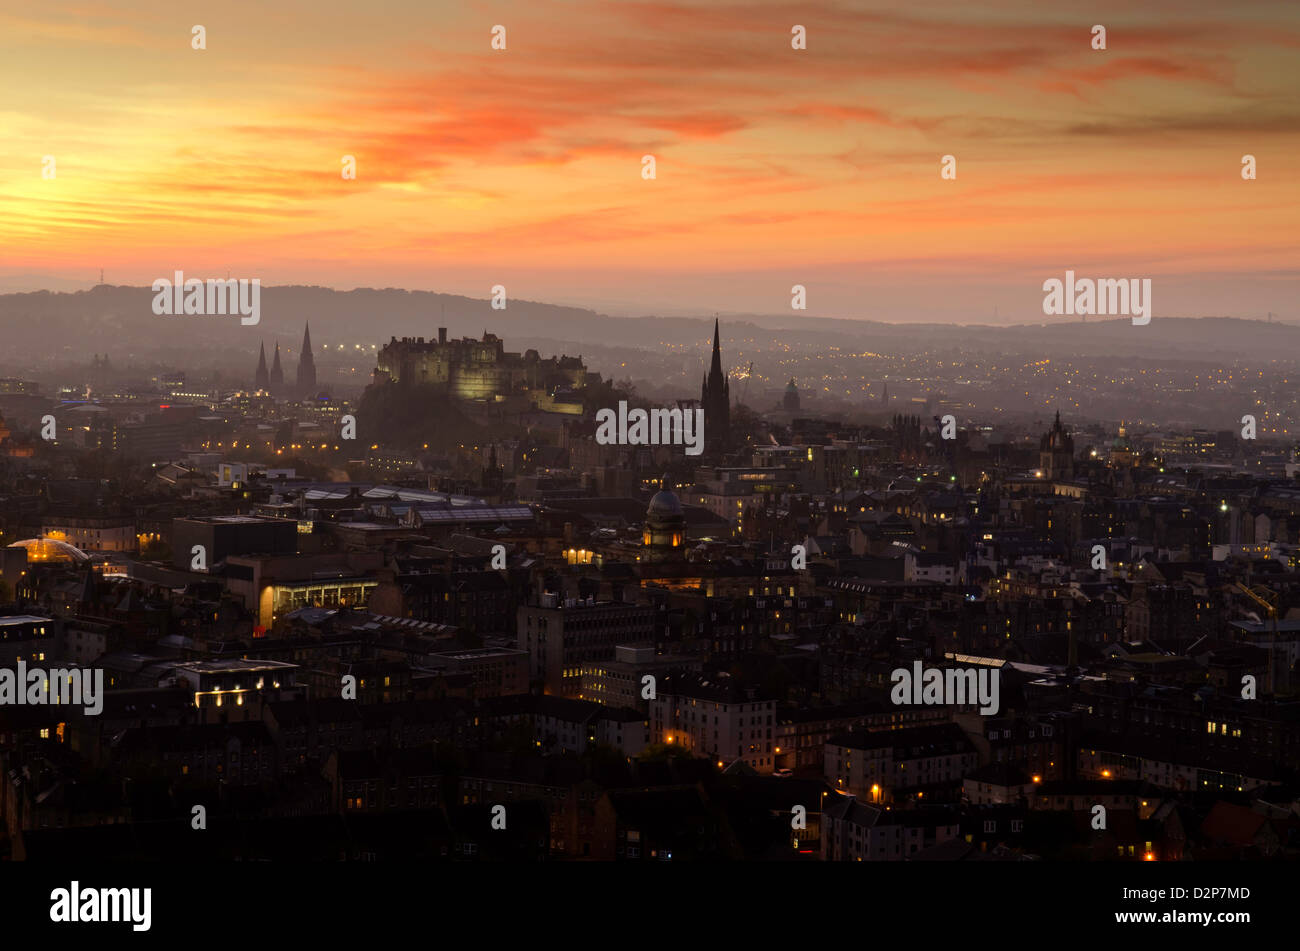 Ein Blick aus der Vogelperspektive auf Edinburgh Castle, die Hauptstadt Schottlands, bei Sonnenuntergang Stockfoto